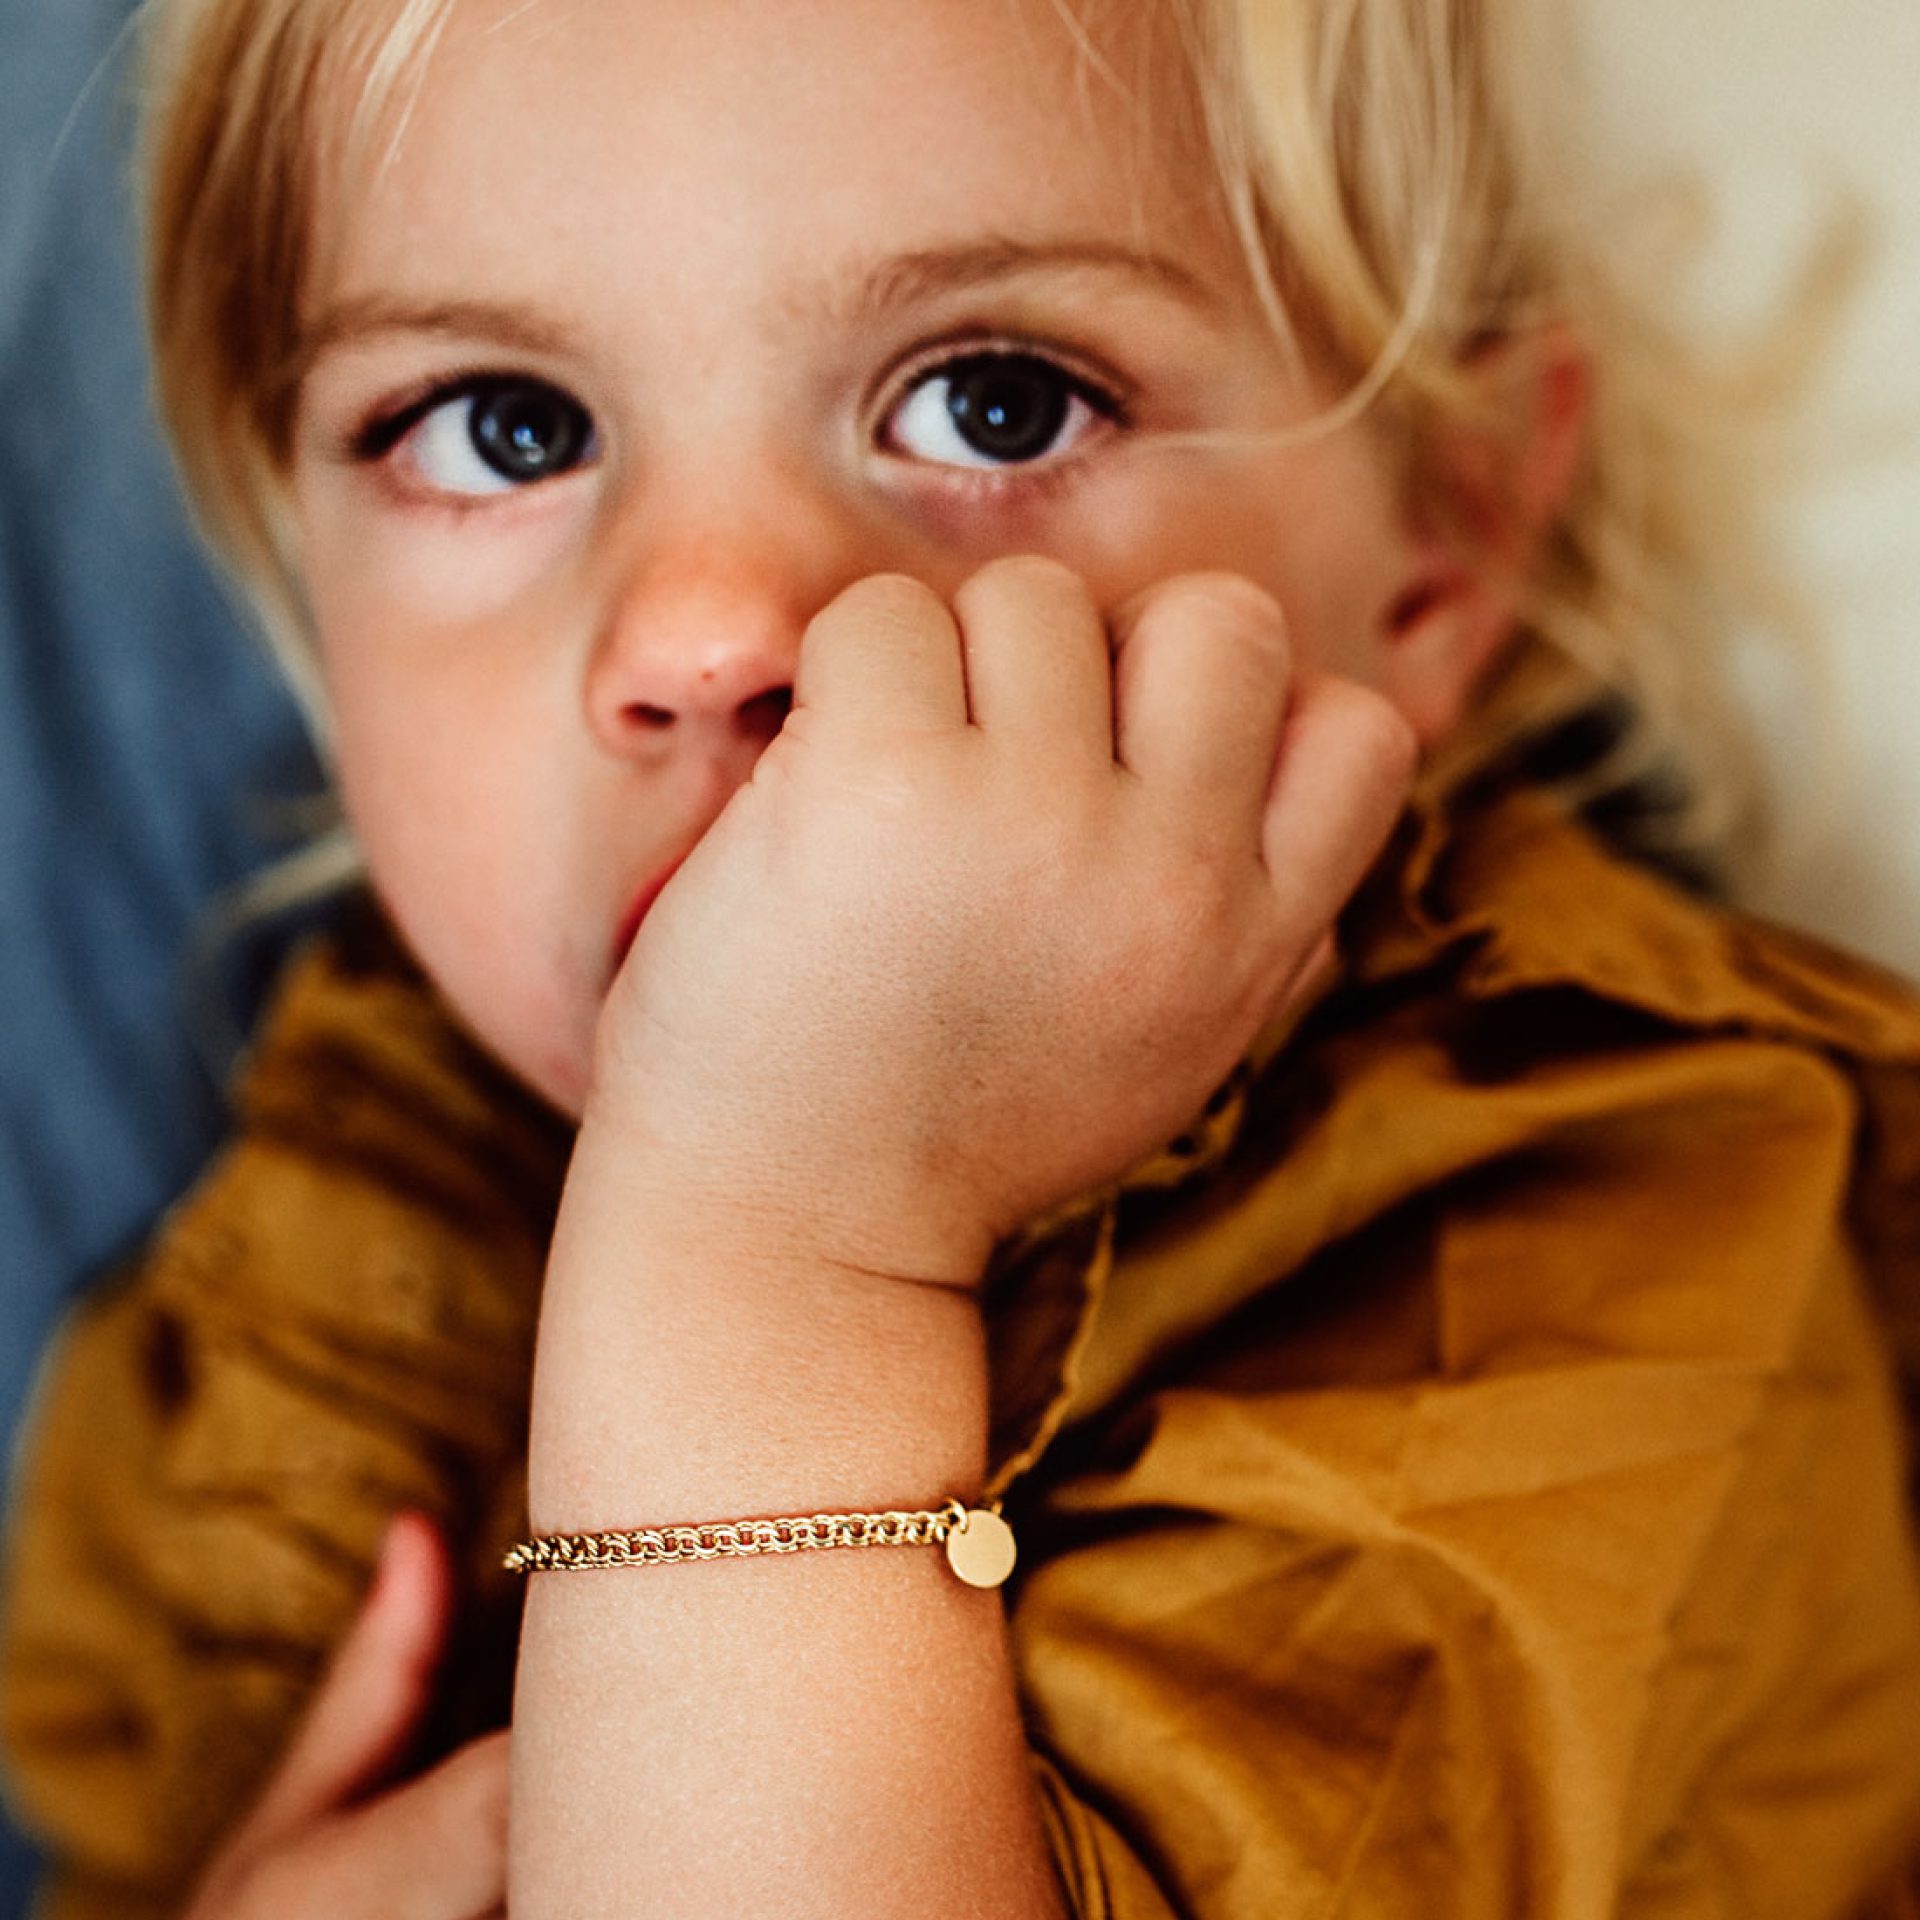 Kinder armkette aus echtgold mit personalisierung gravur geburtsgeschenk